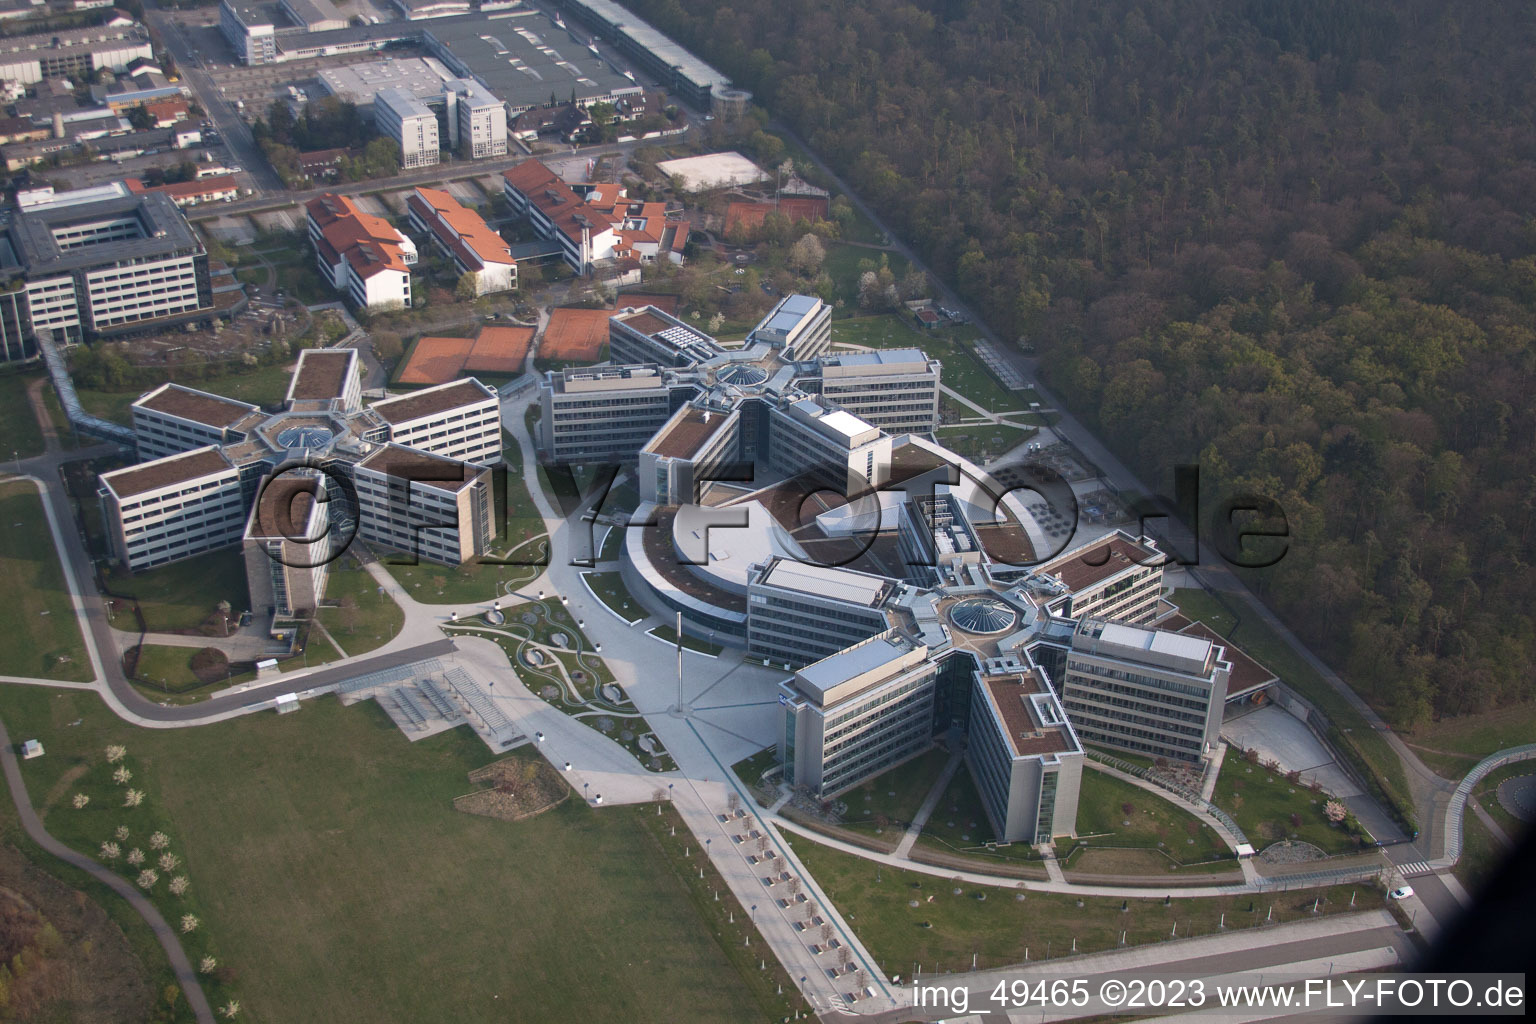 Vue d'oiseau de Zone industrielle, SAP AG à Walldorf dans le département Bade-Wurtemberg, Allemagne